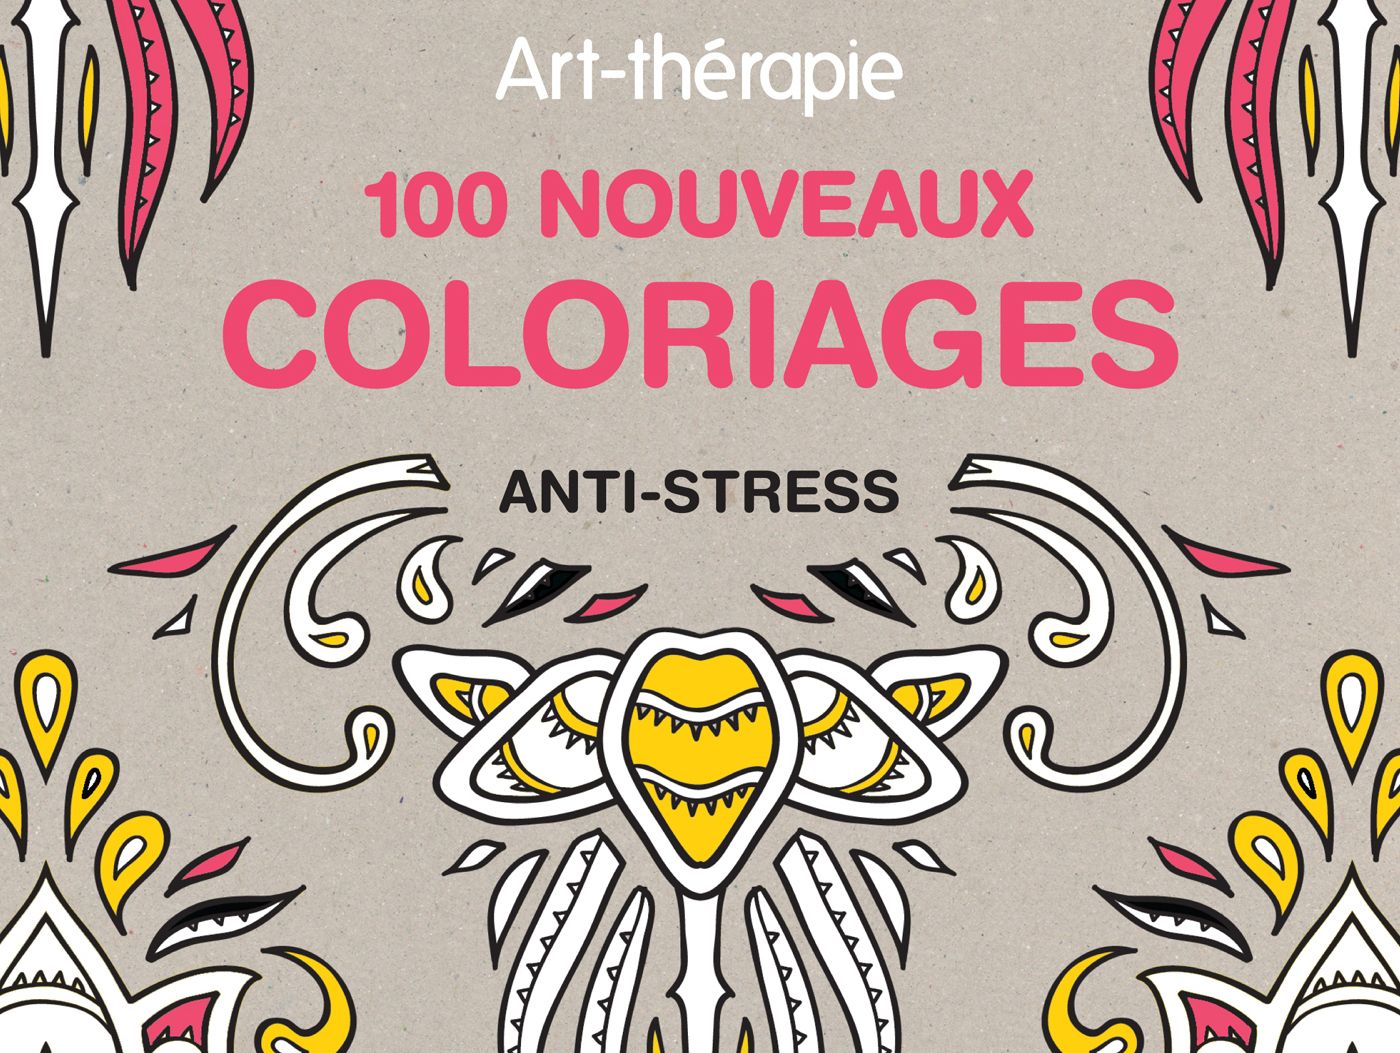 Coloriage anti-stress et mandala gratuits pour adulte - Femme Actuelle